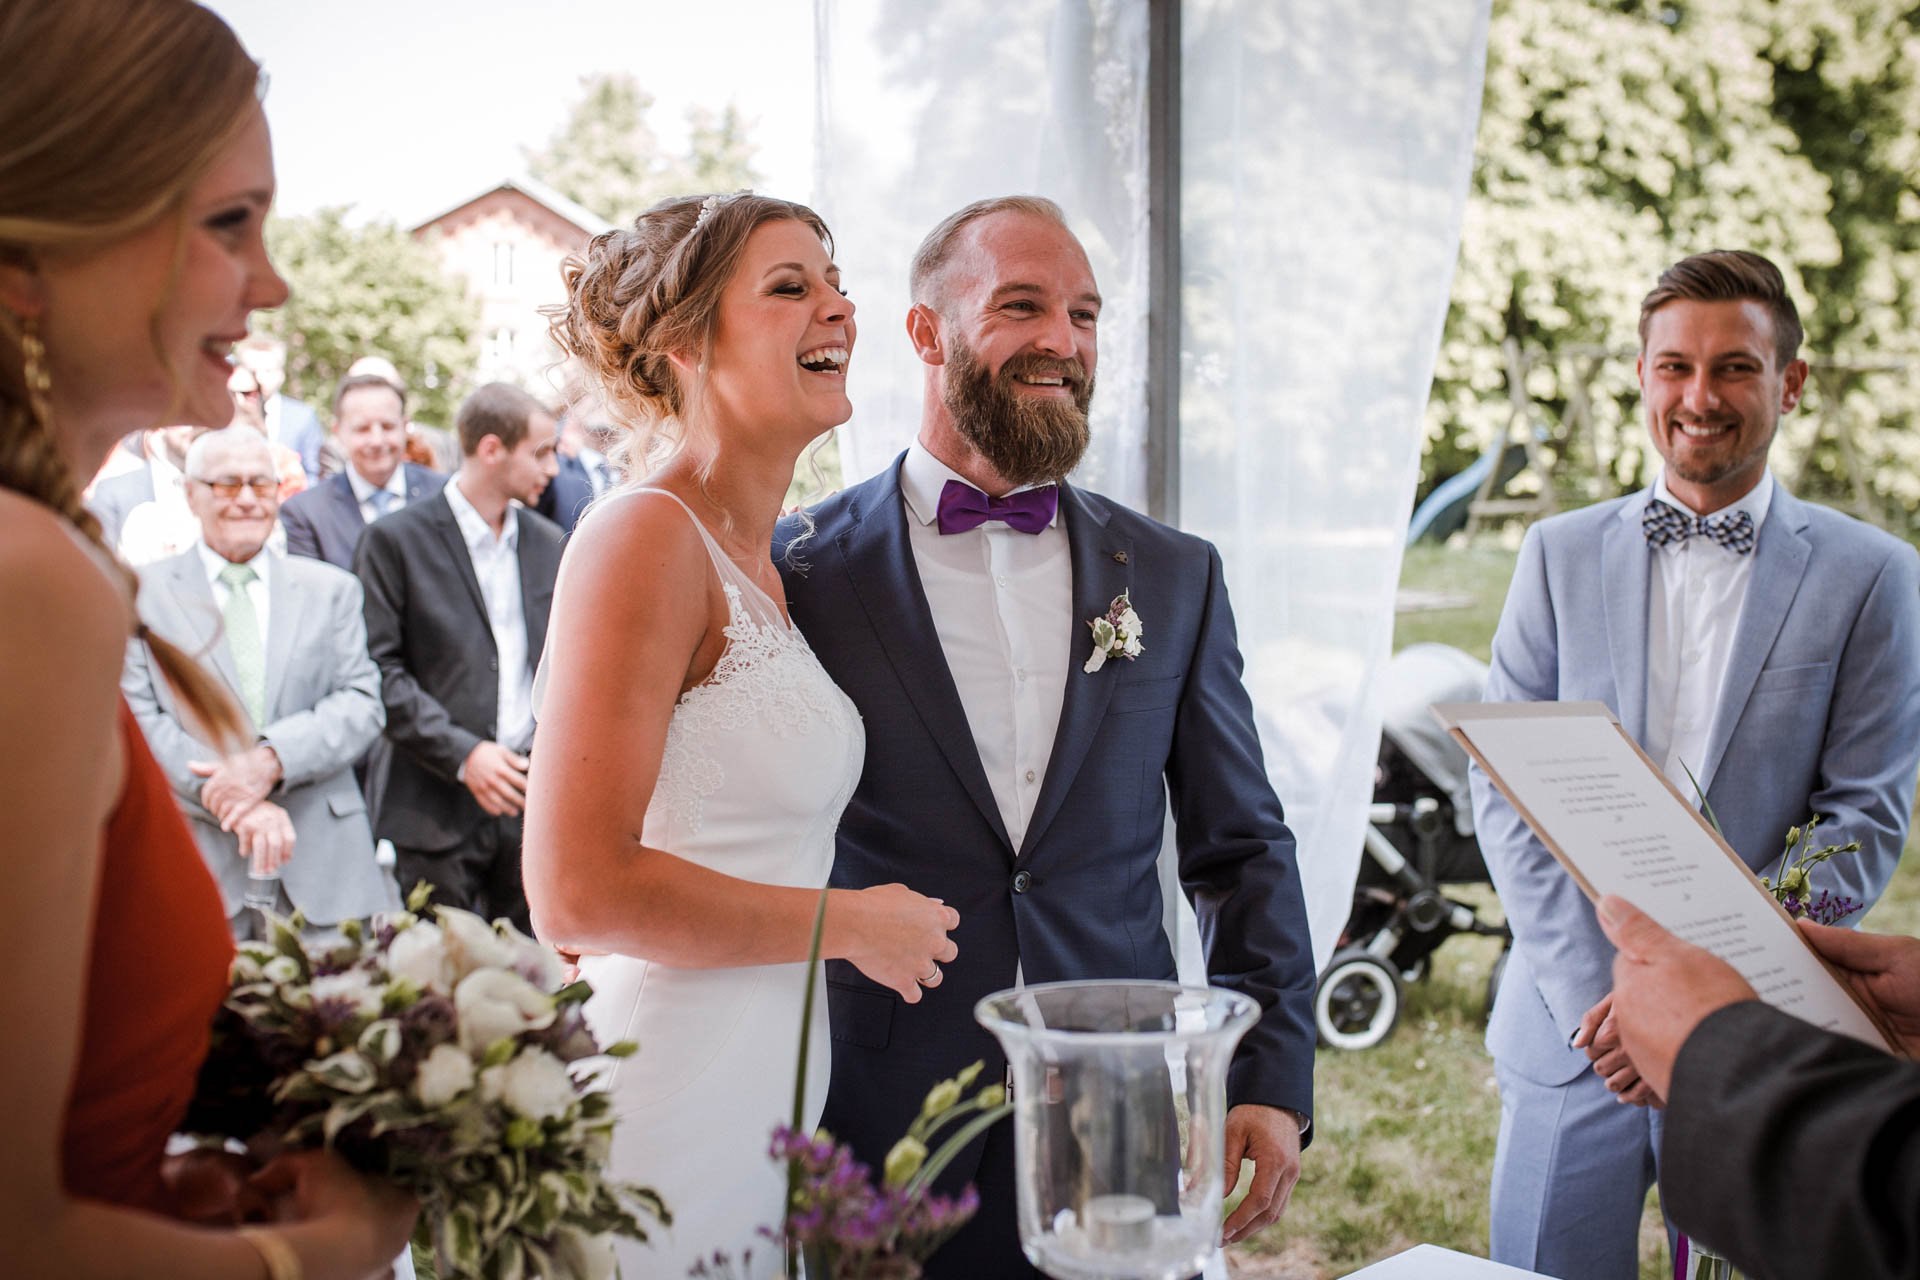 Hochzeitsfotograf für kreative und emotionale Hochzeitsportraits & Hochzeitsreportagen in Landgestuet Traventhal